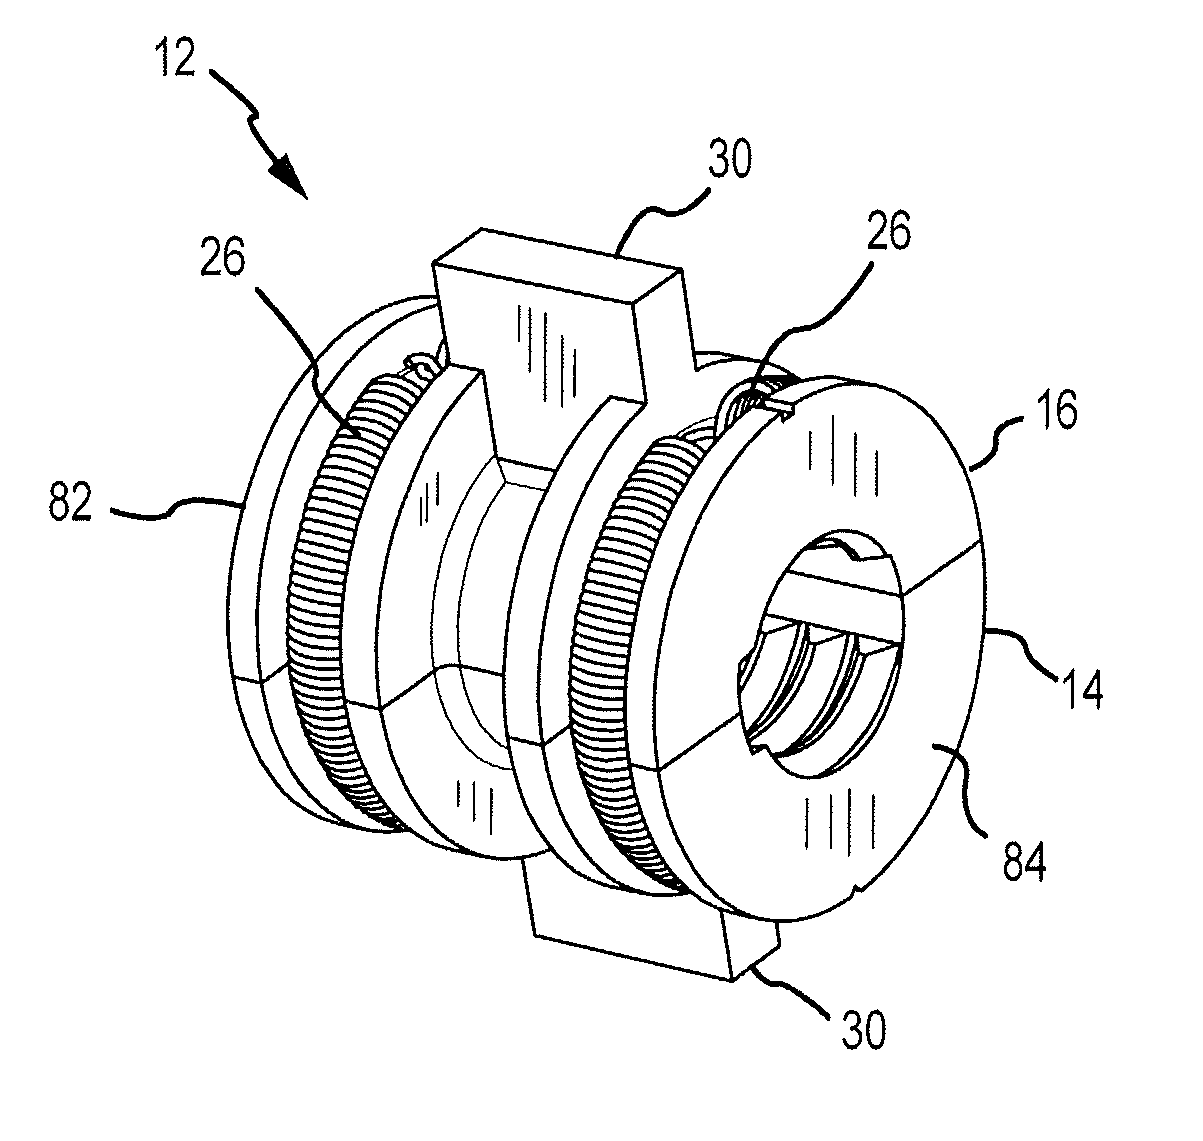 Motor mechanism